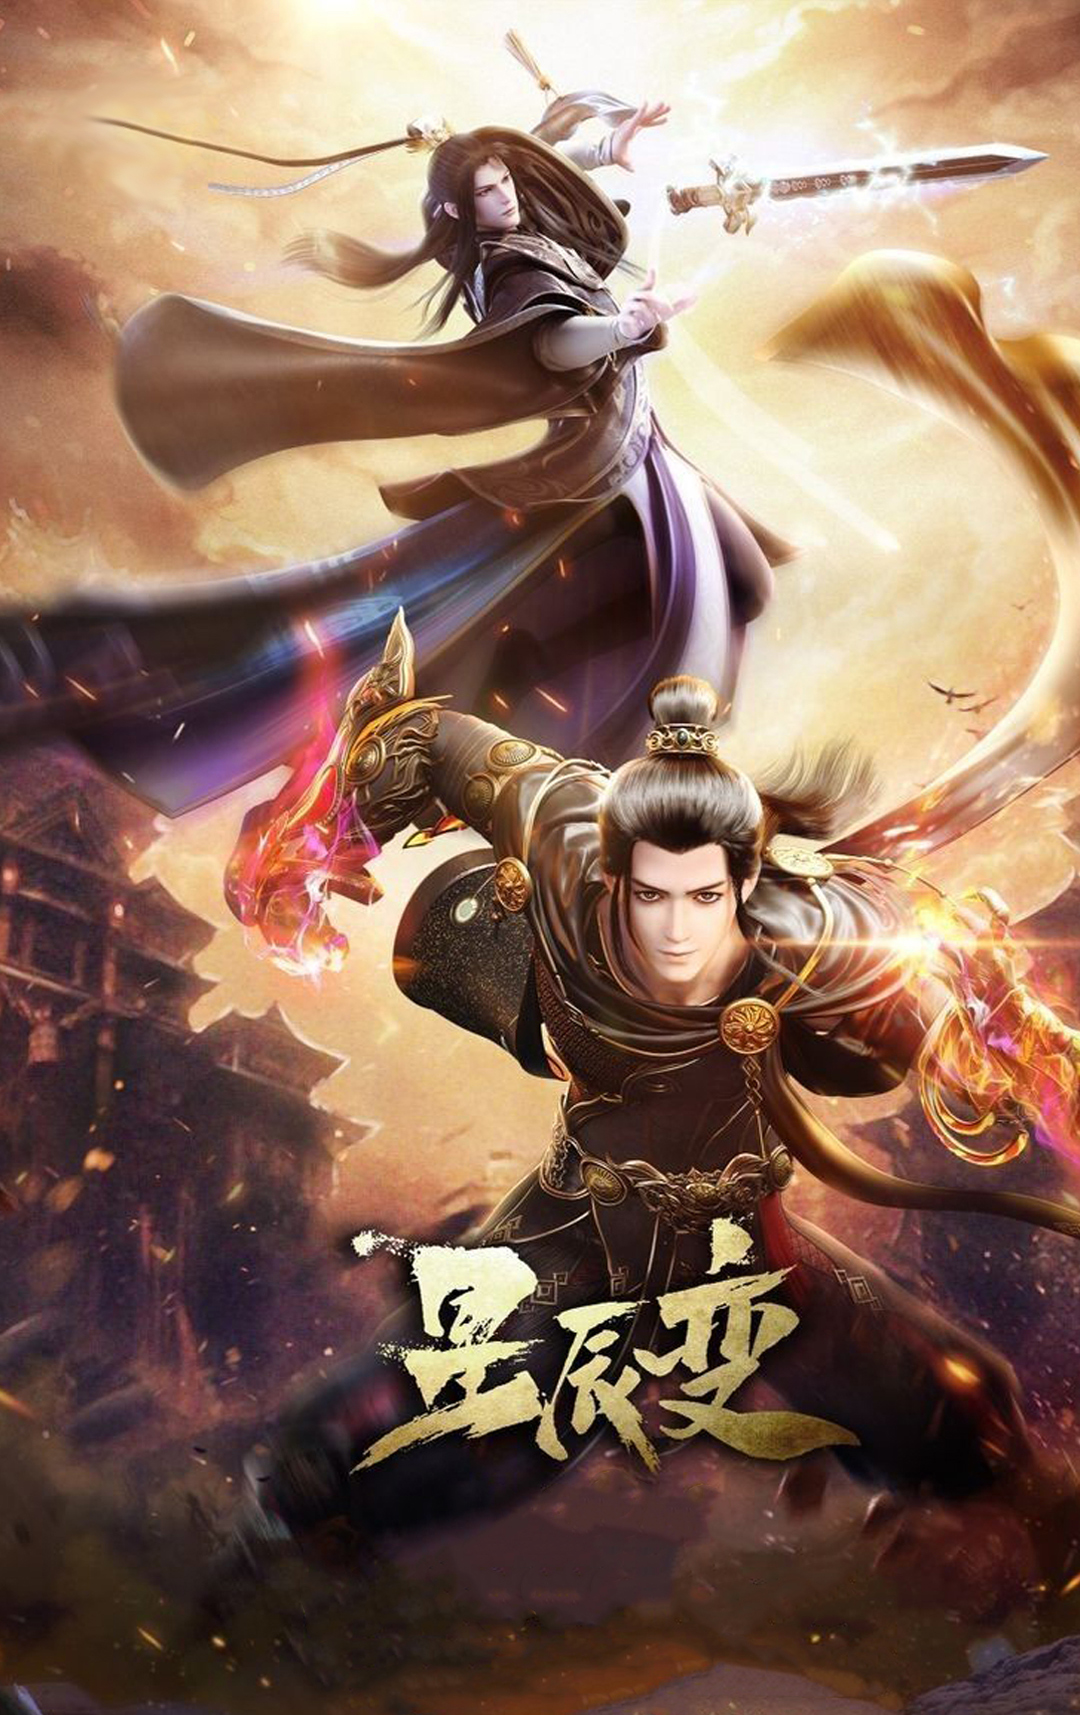 Xing chen Bian season 5